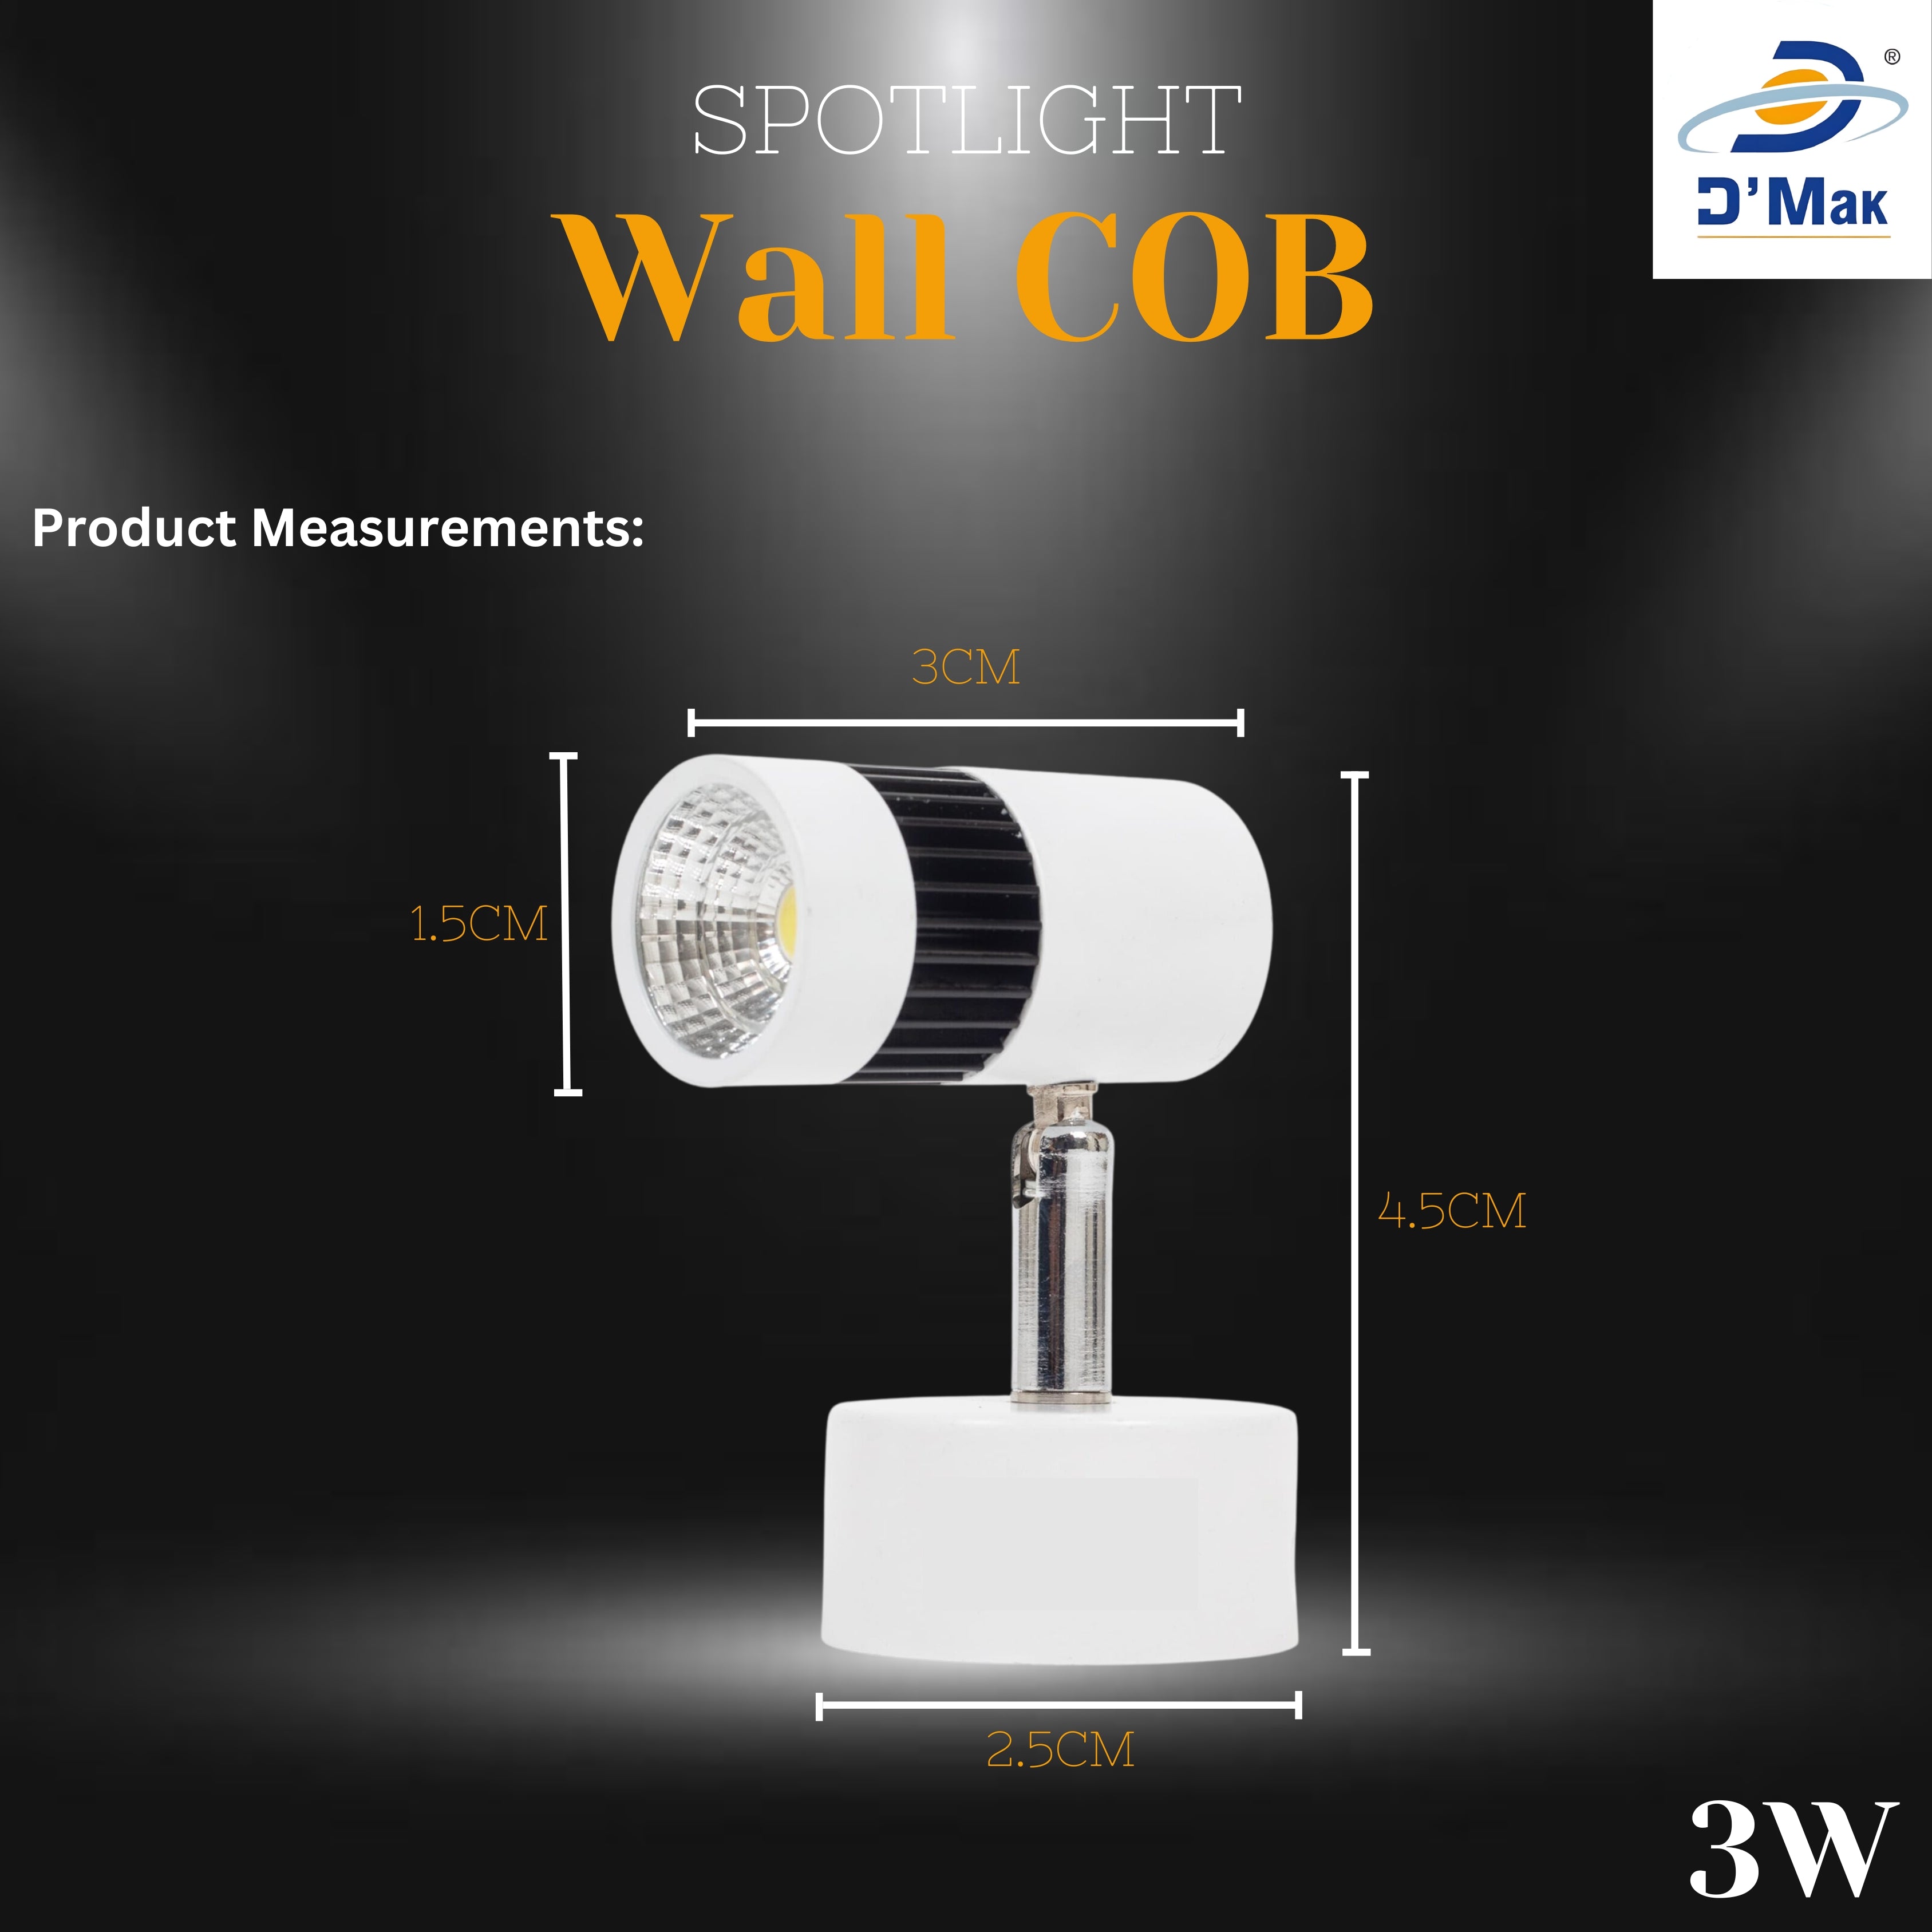 3 Watt Led White Body Wall Light for focusing wall or photo frame